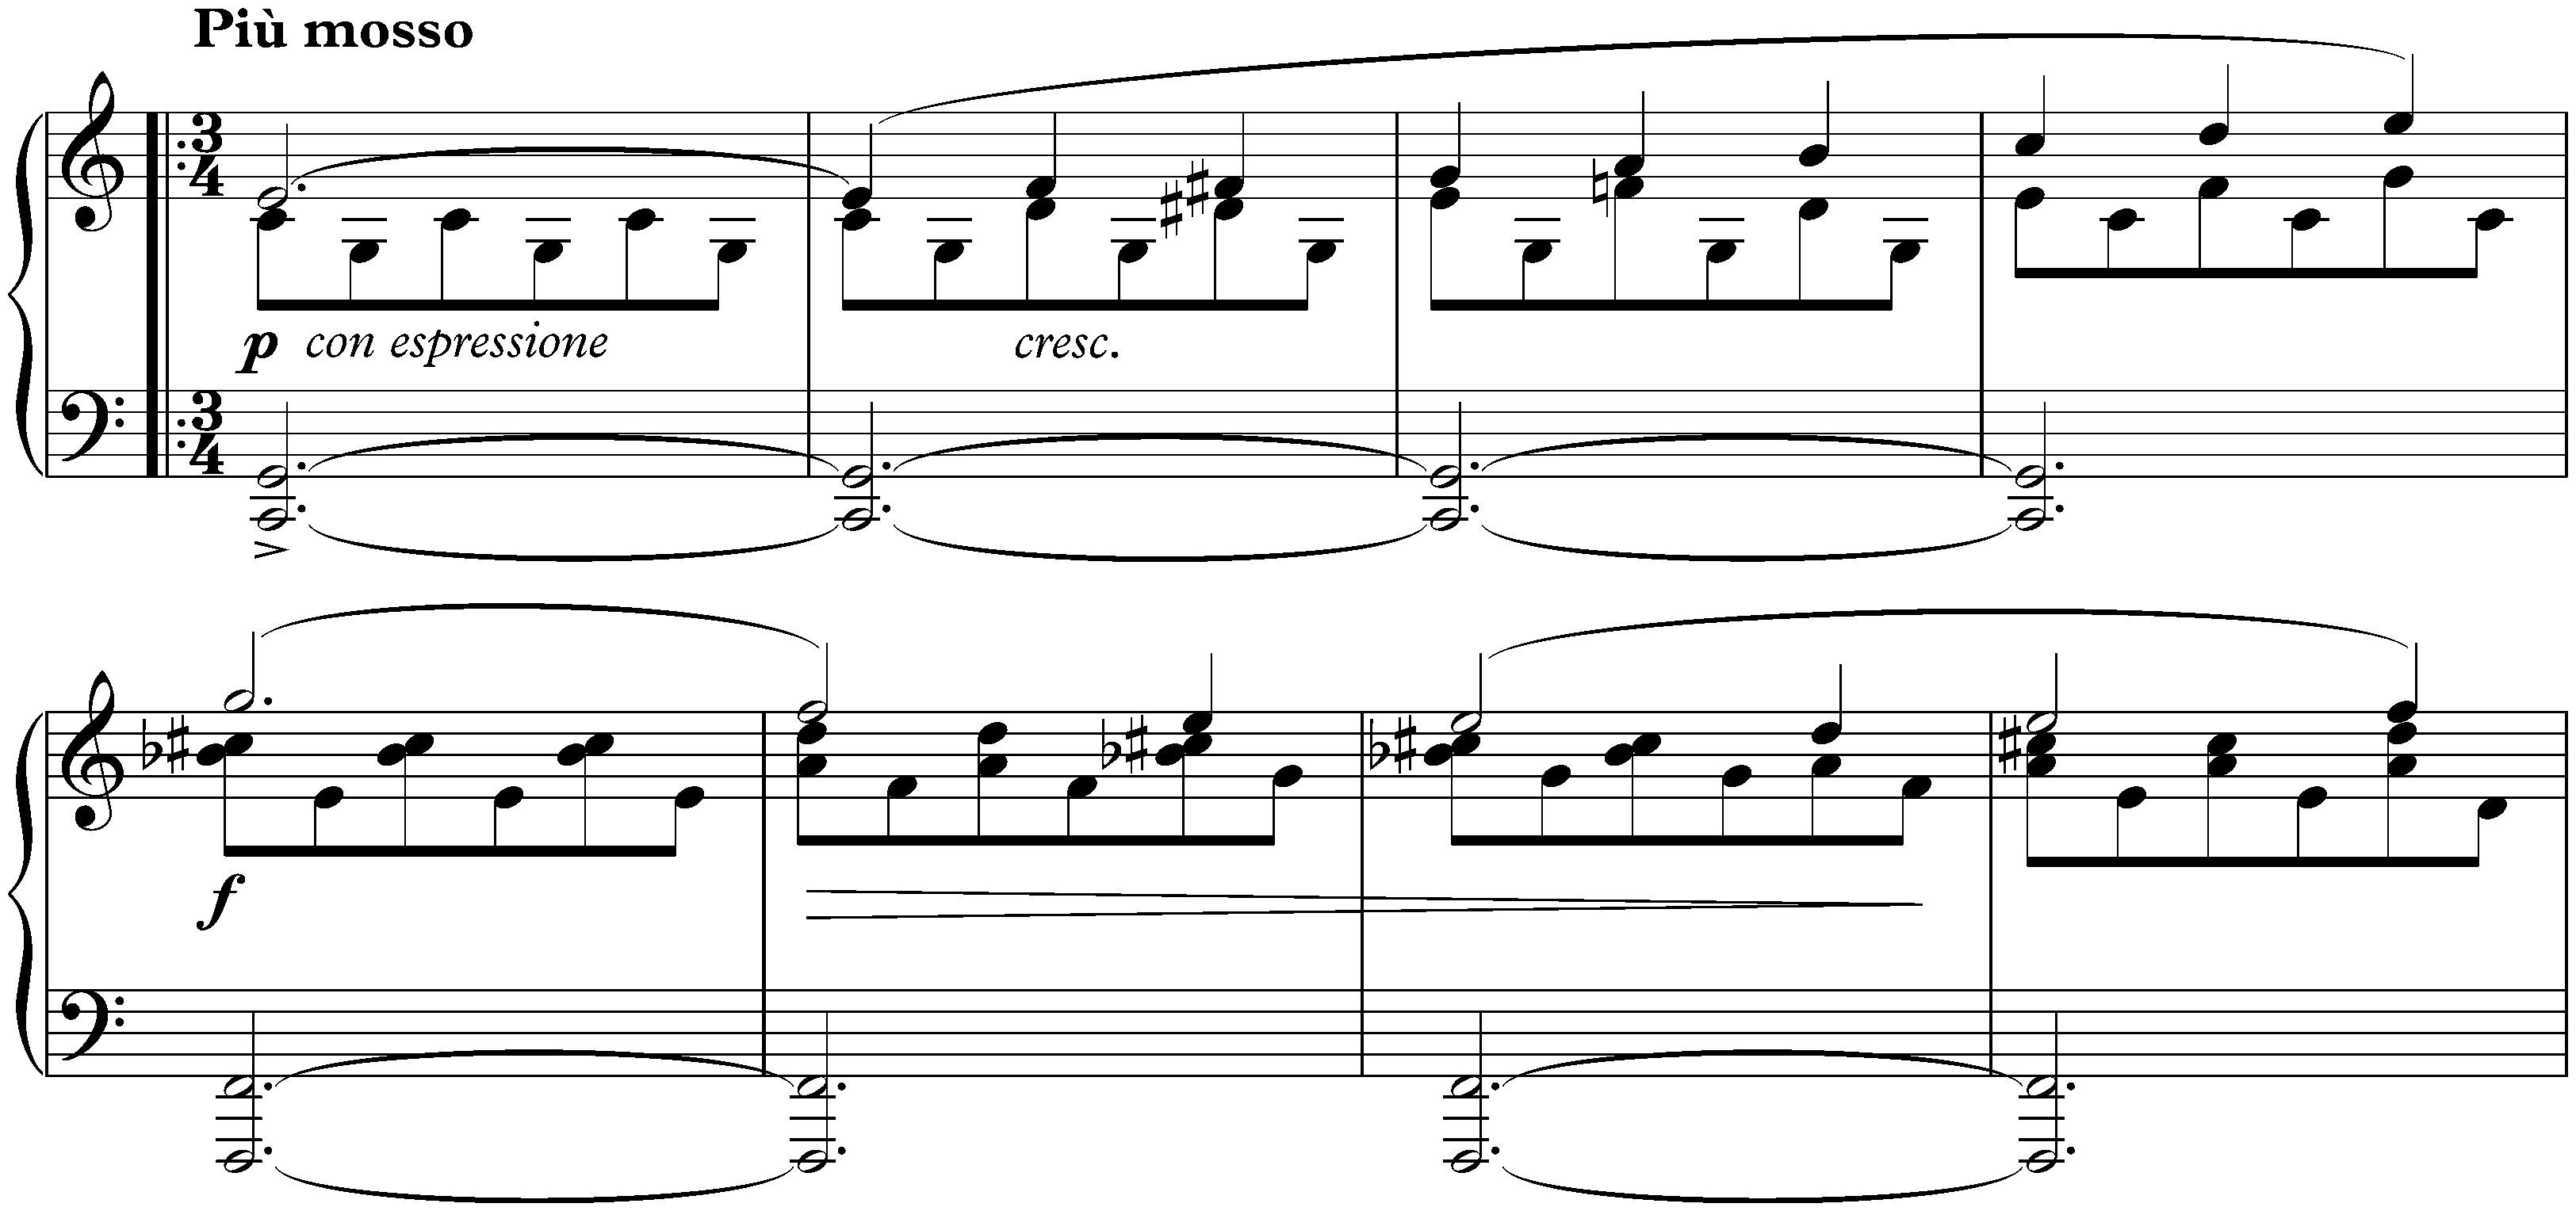 Sonata no. 1 in C major, op. 1; 3. Scherzo: Allegro molto e con fuoco